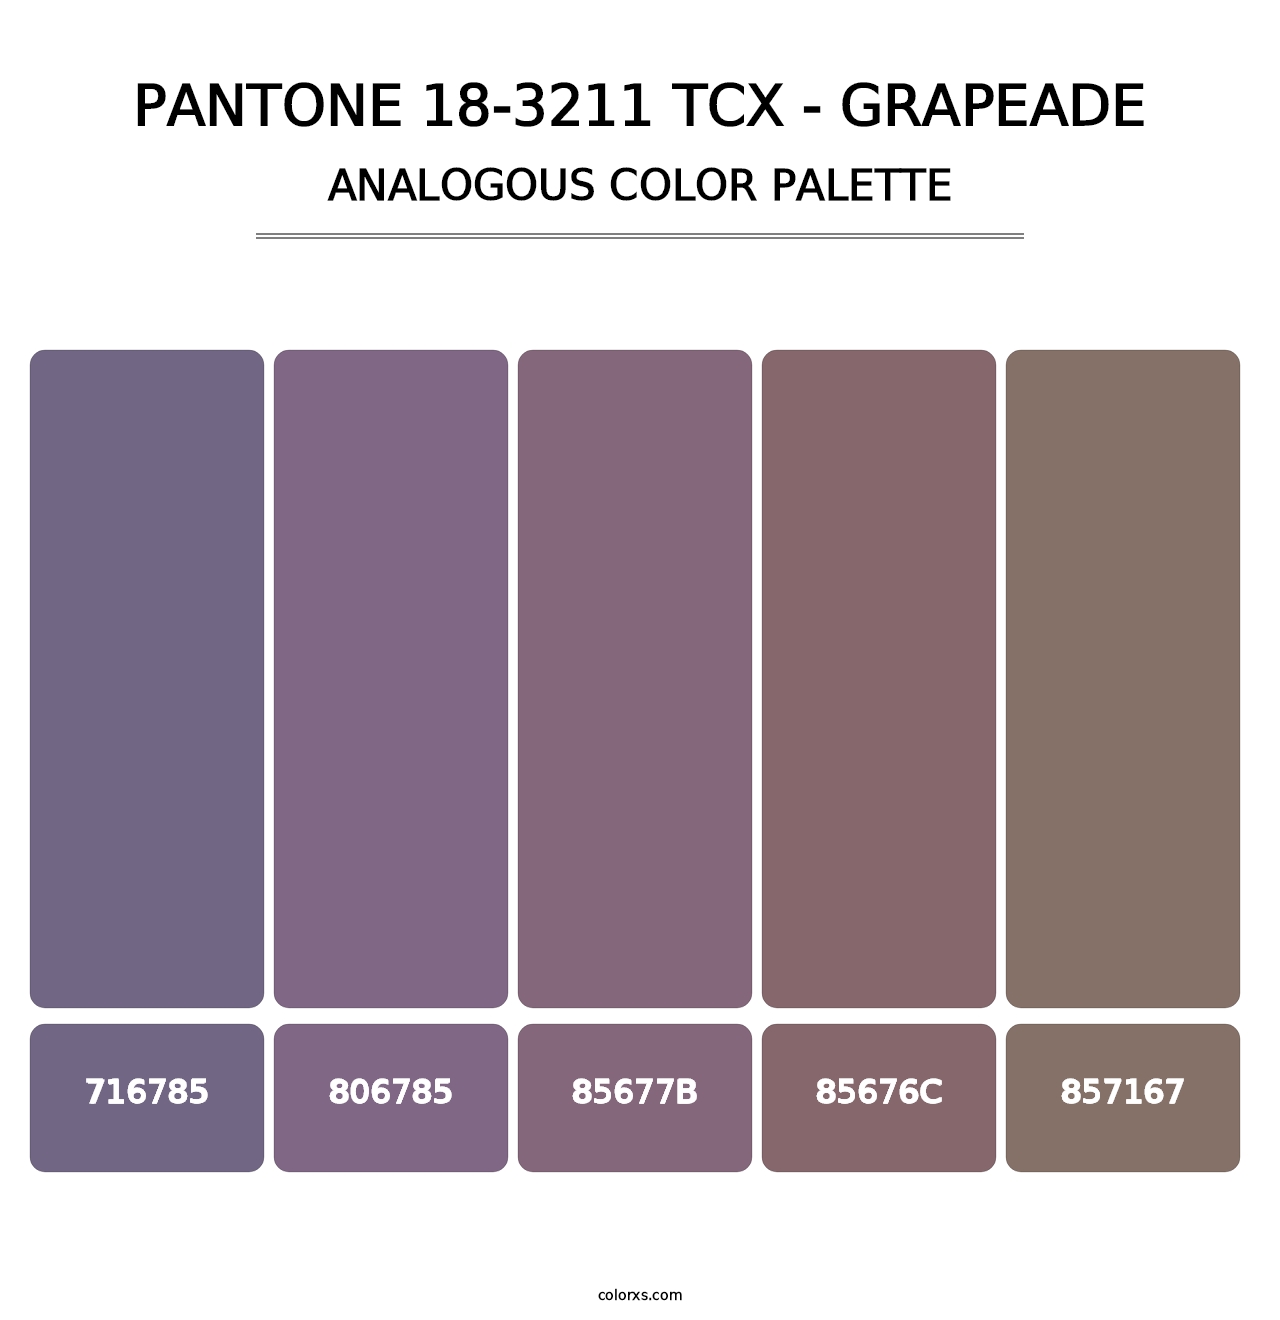 PANTONE 18-3211 TCX - Grapeade - Analogous Color Palette